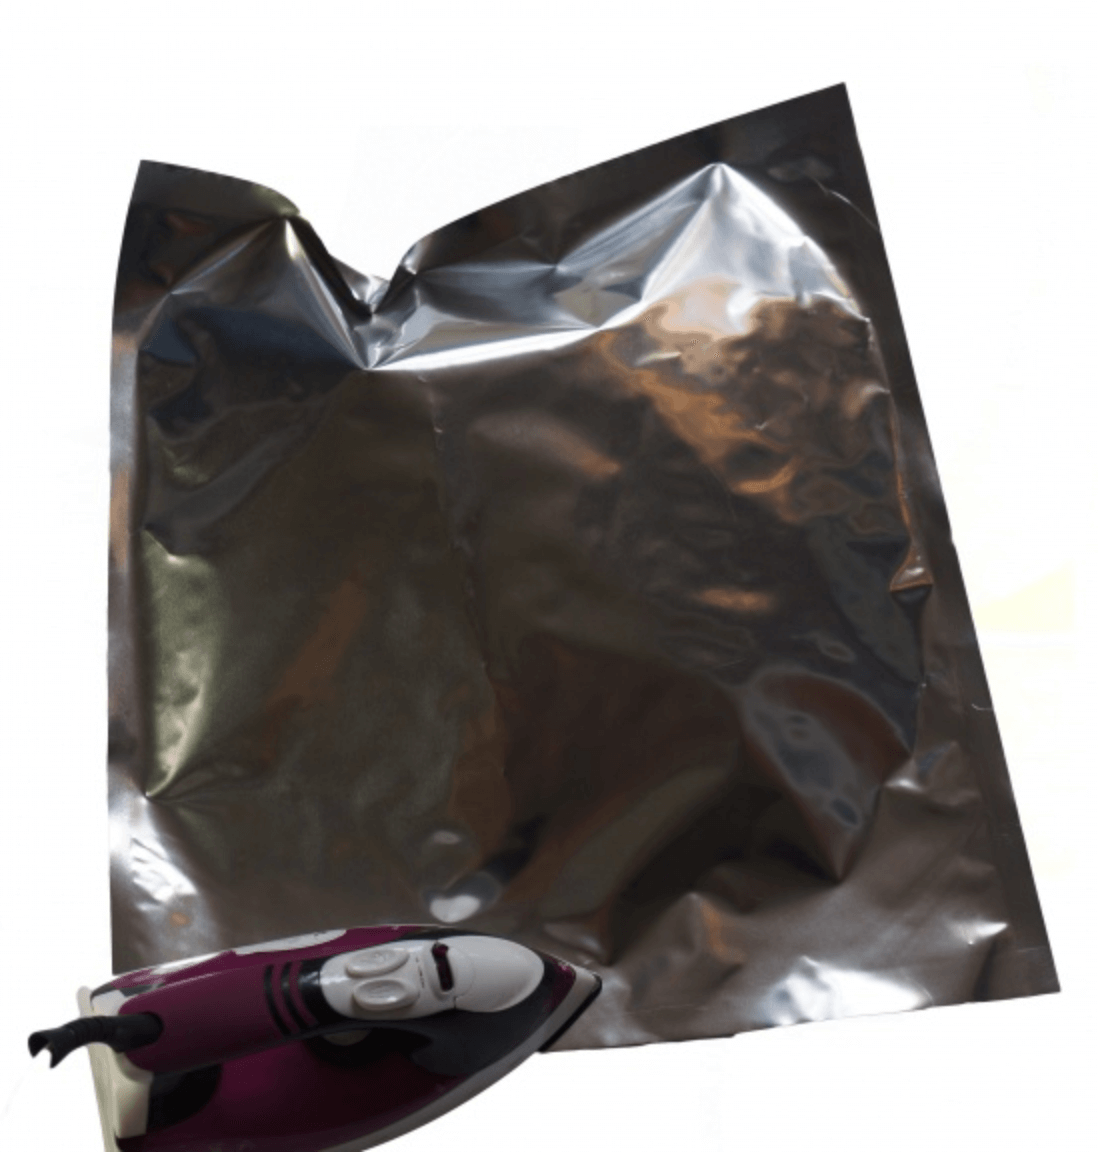 Worki termozgrzewalne Metal-Bag